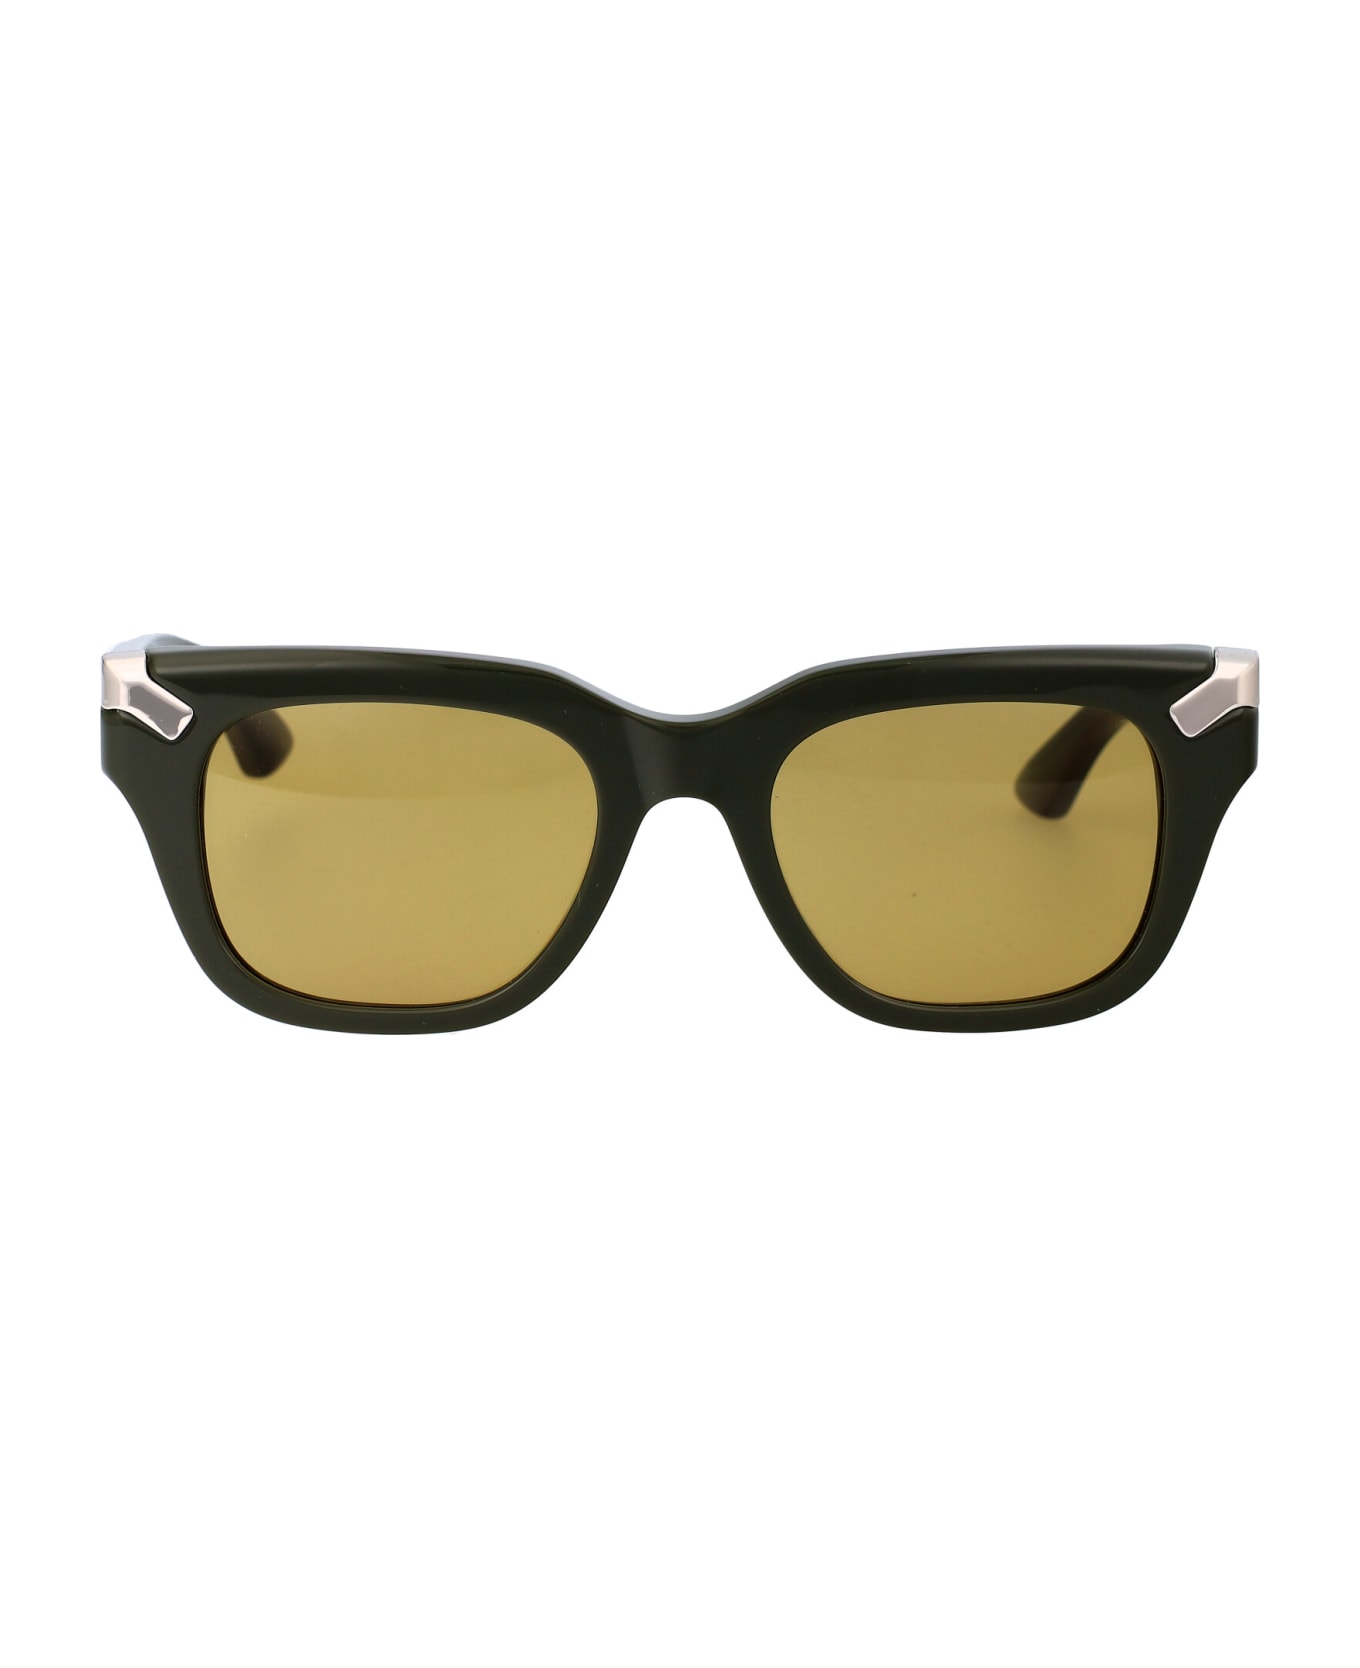 Alexander McQueen Eyewear Am0439s Sunglasses - 004 GREEN GREEN BROWN